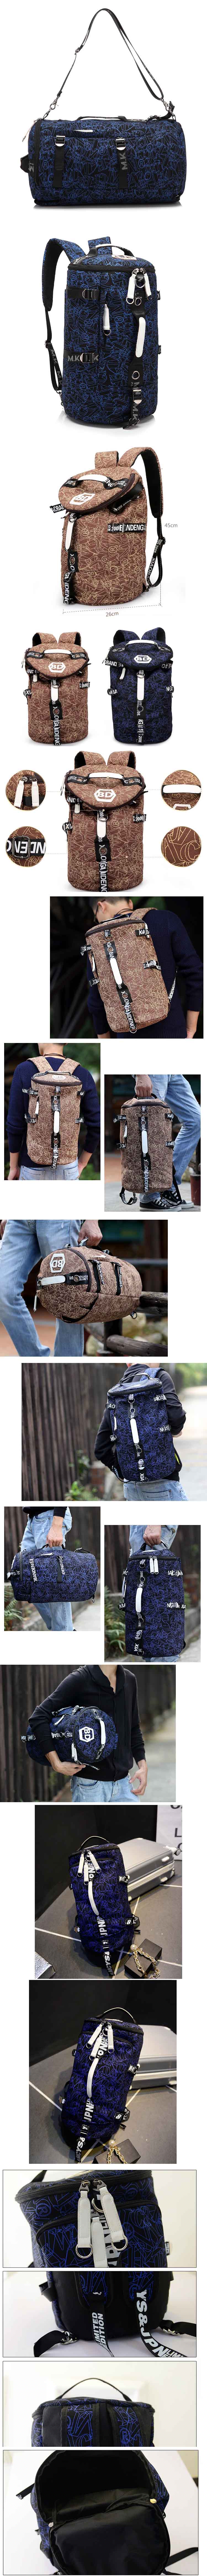 cari tas ransel pria multifungsi? bisa di gunakan sebagai tas ransel , tas selempang dan tas jinjing, ada ratusan model tas pria di pfp , klik dan pesan online sekarang